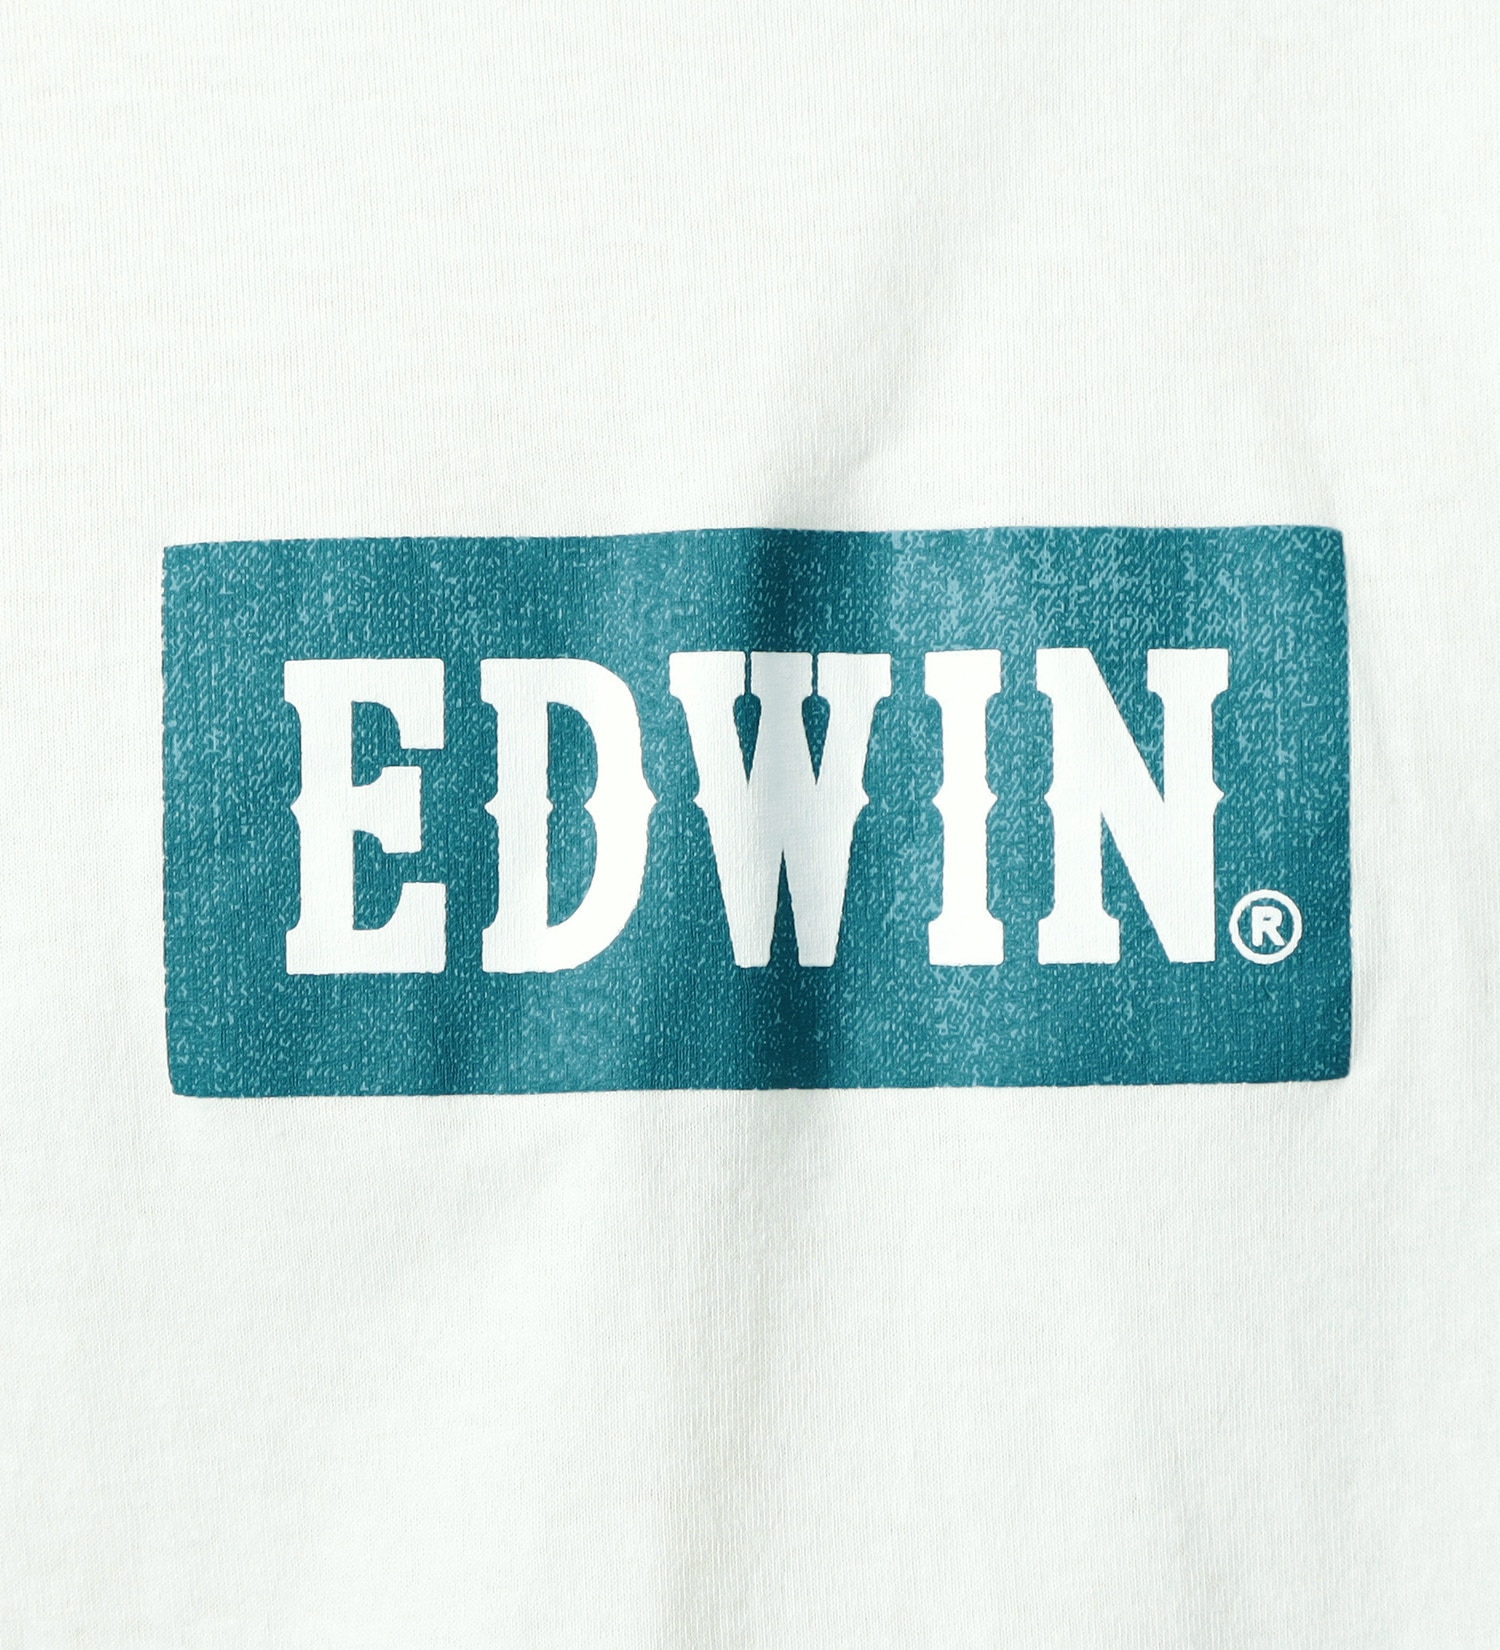 EDWIN(エドウイン)のボックスロゴプリントTシャツ【アウトレット店舗・WEB限定】|トップス/Tシャツ/カットソー/メンズ|ホワイト